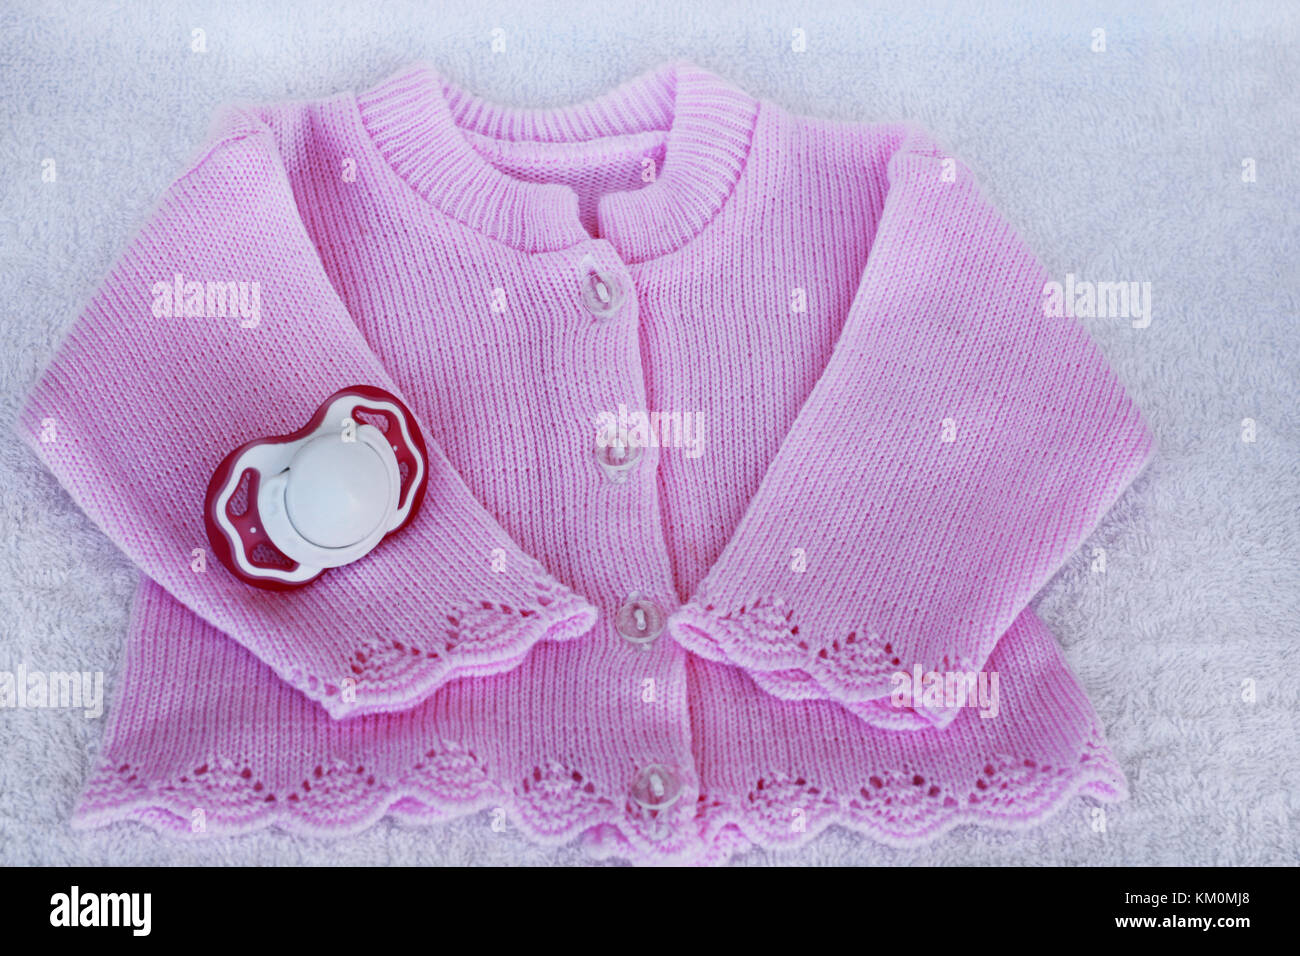 Baby stuff auf weißem Hintergrund. Für neugeborenes Mädchen mit Rose aus Bluse und Dummy auf weißen Handtuch Hintergrund. Stockfoto